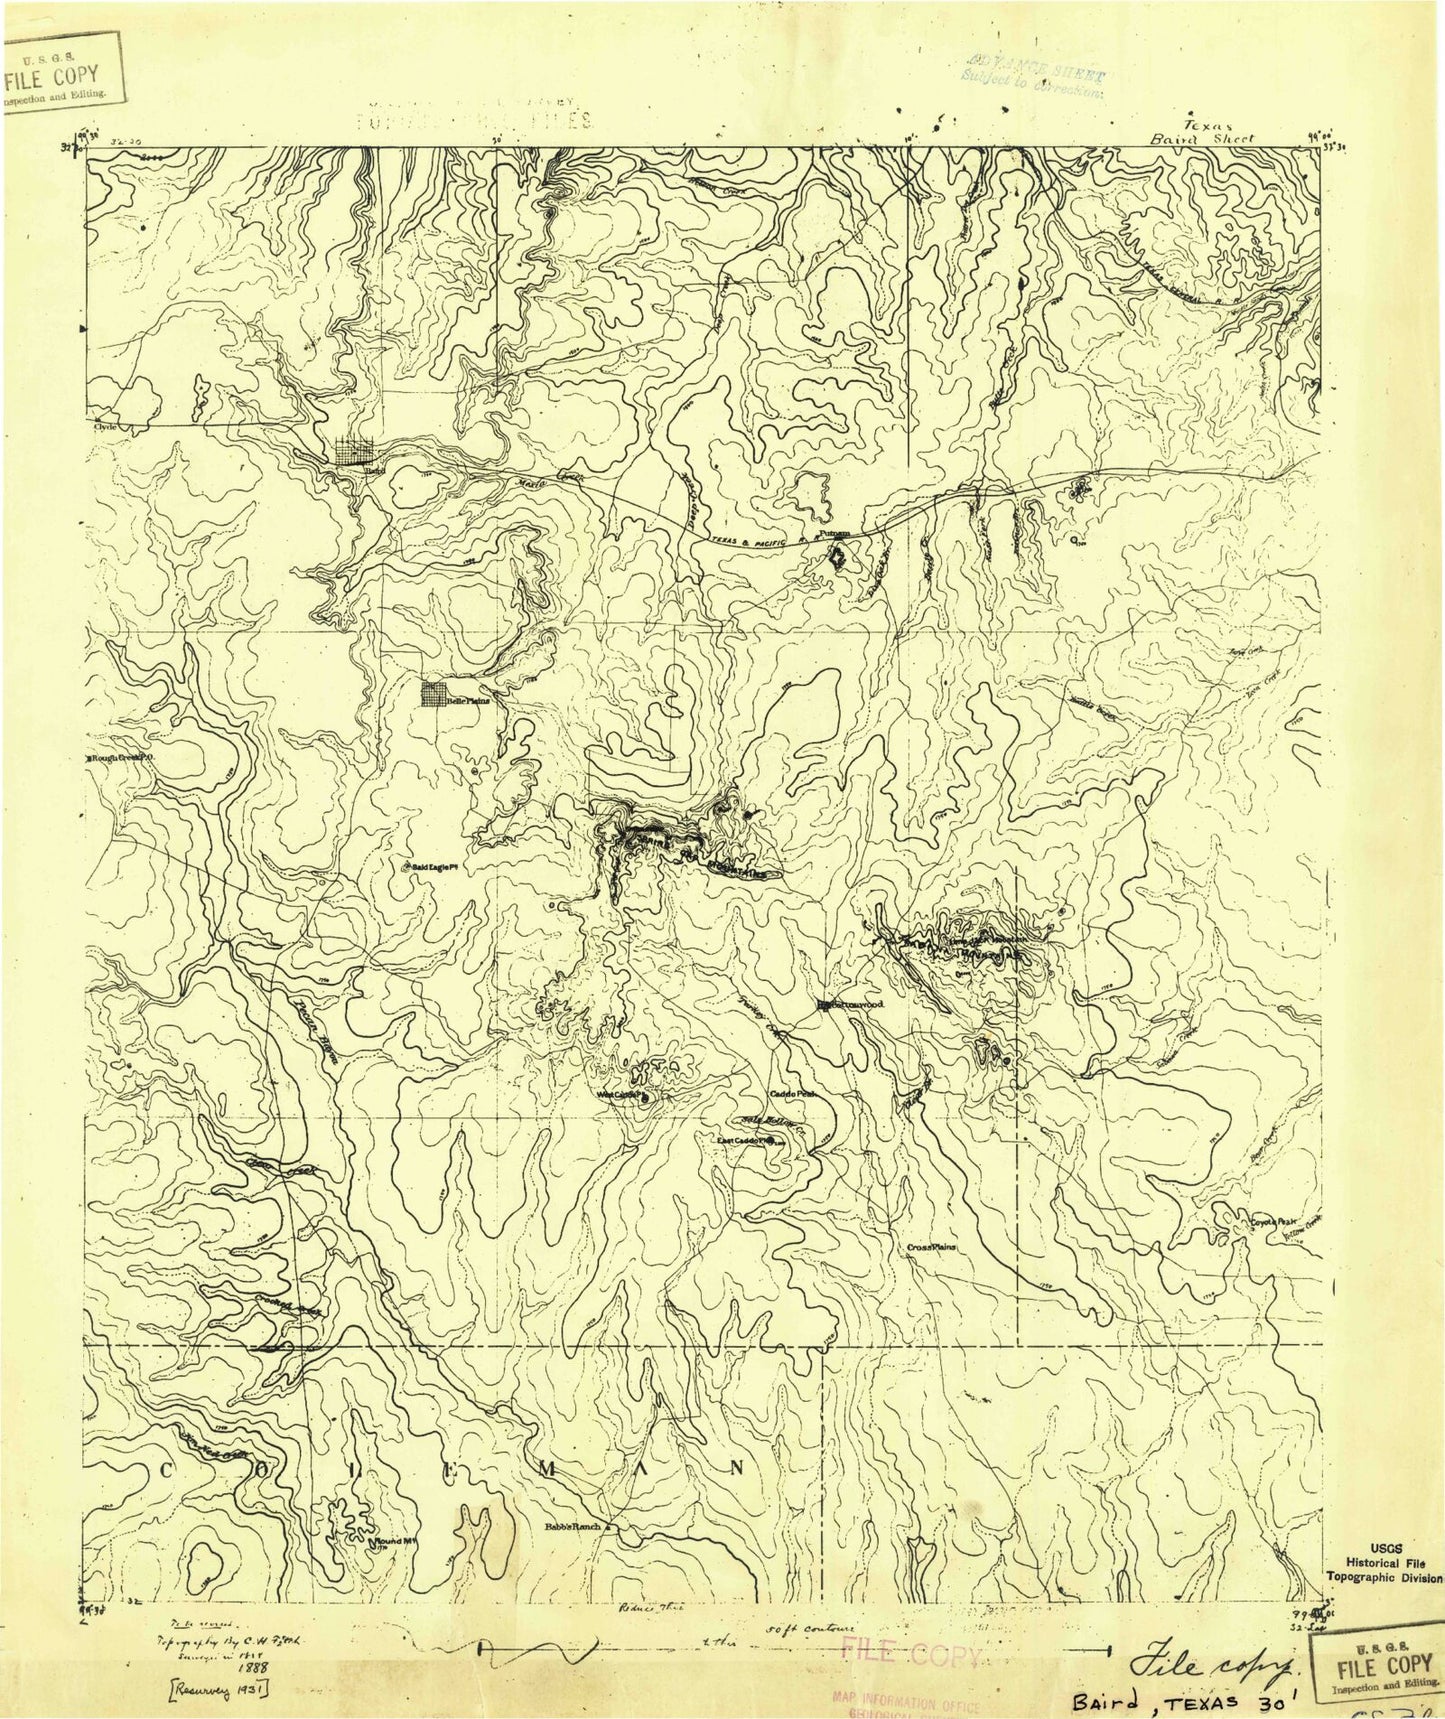 Historic 1931 Baird Texas 30'x30' Topo Map Image